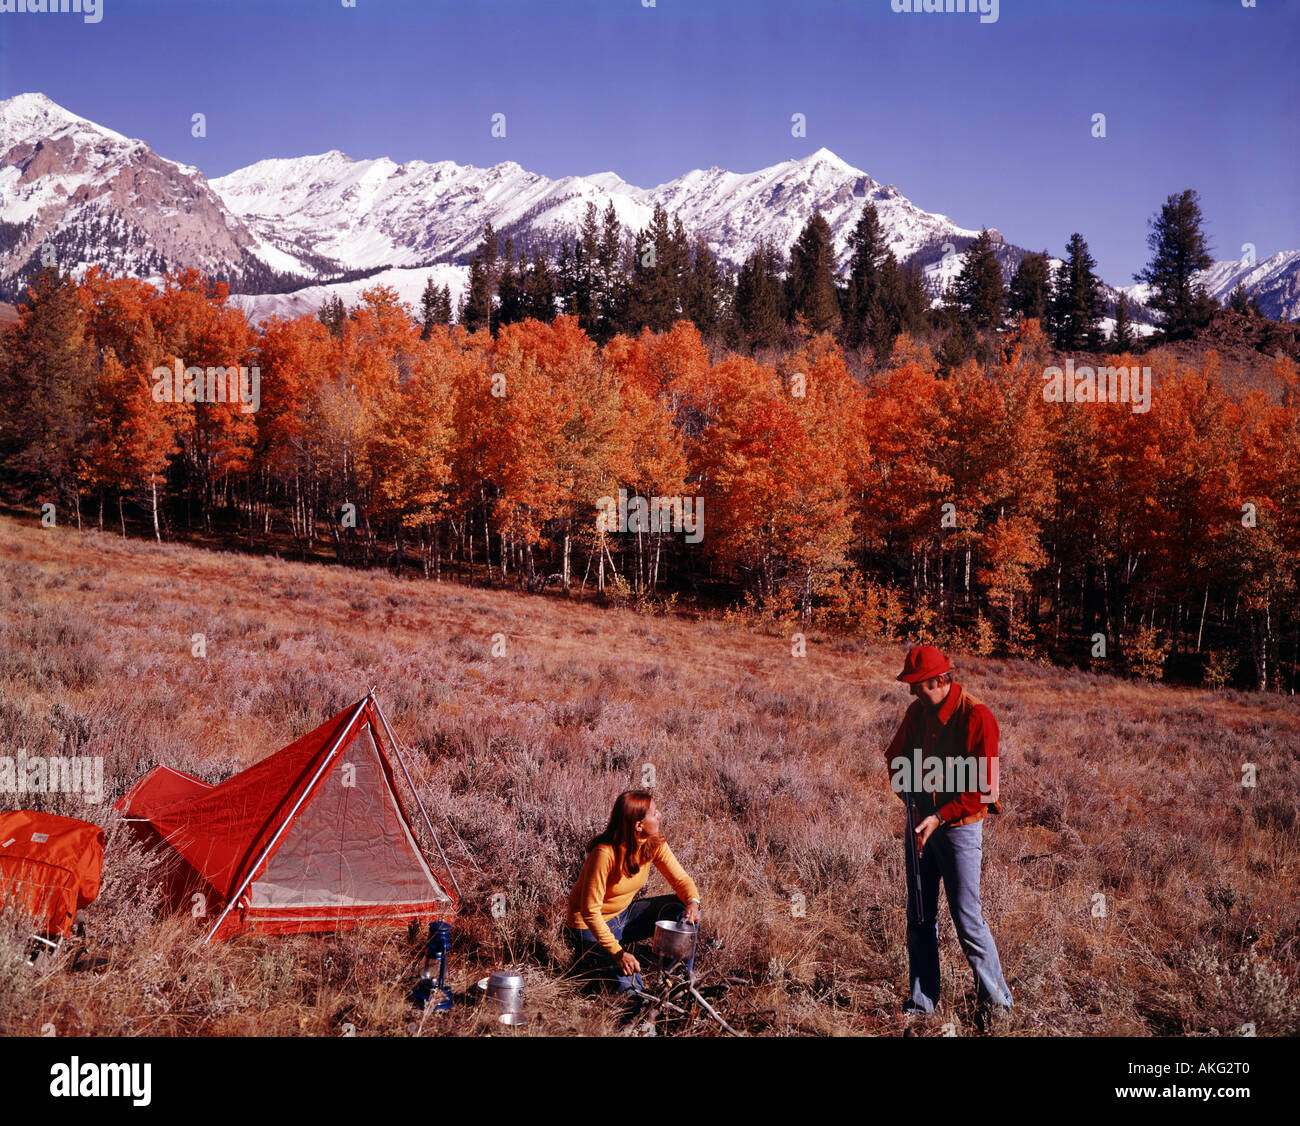 Jeune couple établir le campement sur une expédition de chasse pour les hautes montagnes de l'Idaho où sommets enneigés montée à l'horizon Banque D'Images